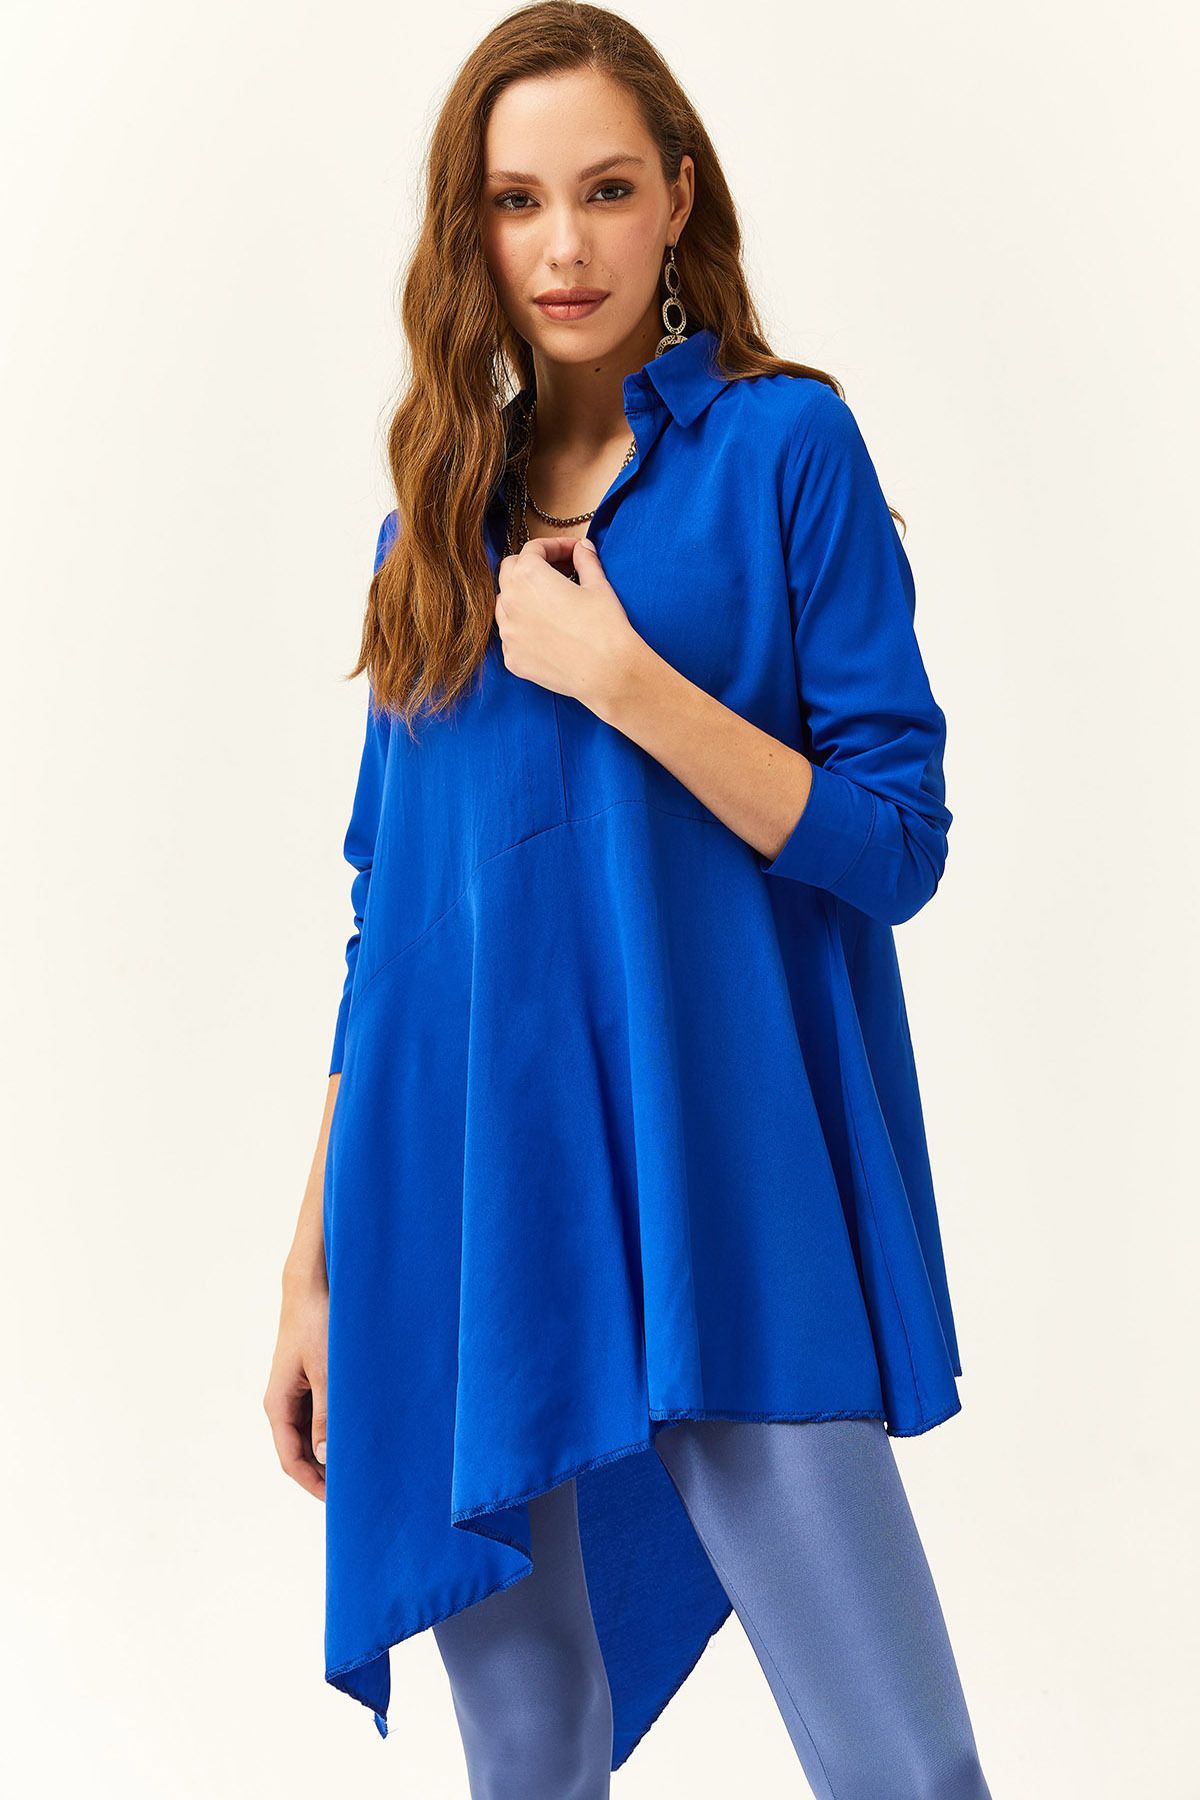 Olalook Kadın Saks Mavi Gömlek Yakalı Asimetrik Tunik